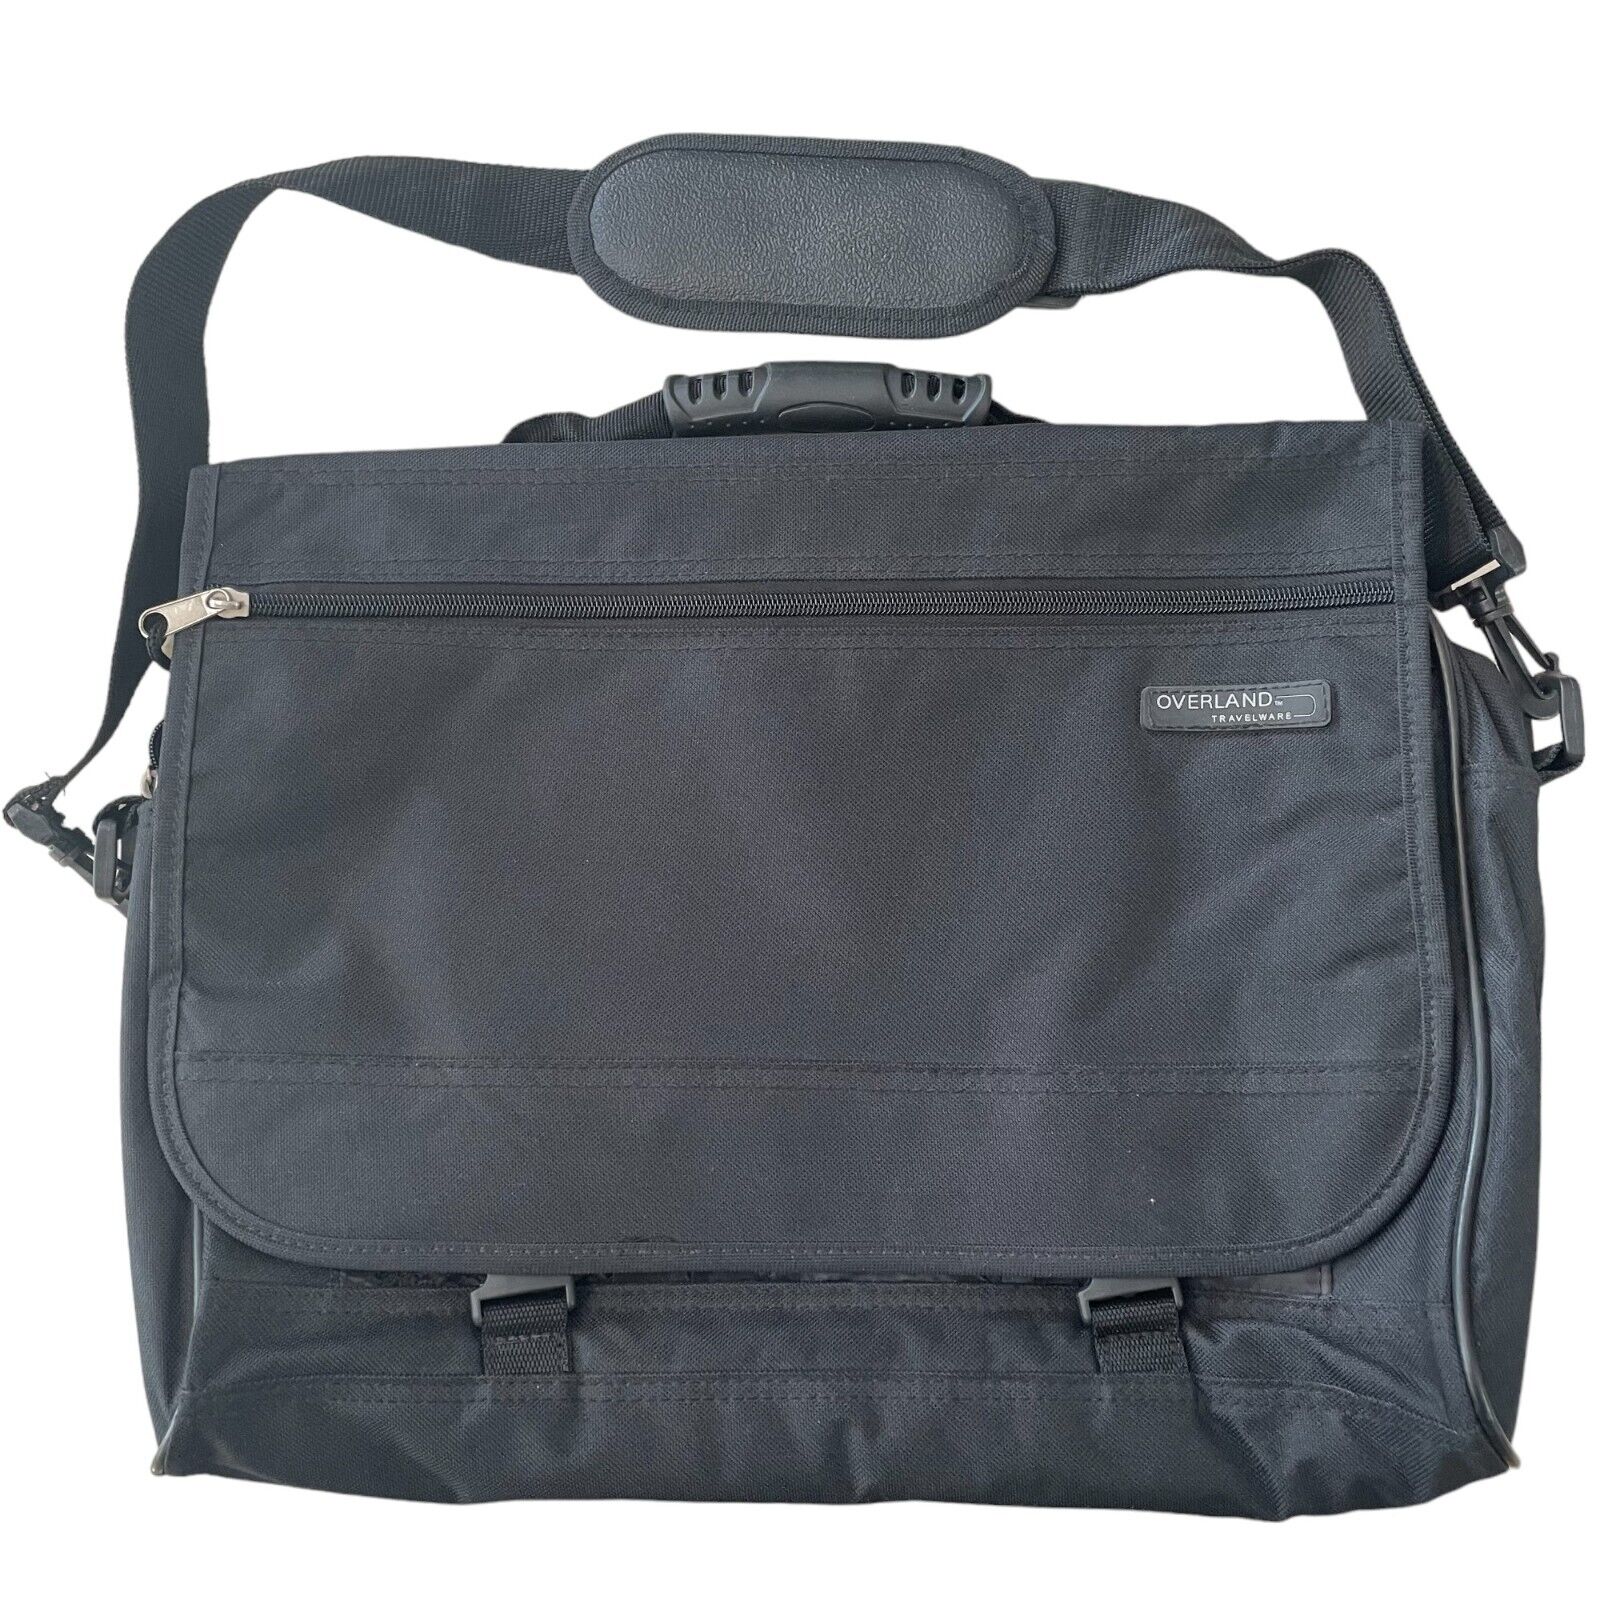 VTG Overland Travelware Black Briefcase Laptop Bag Case Multiple Compartments